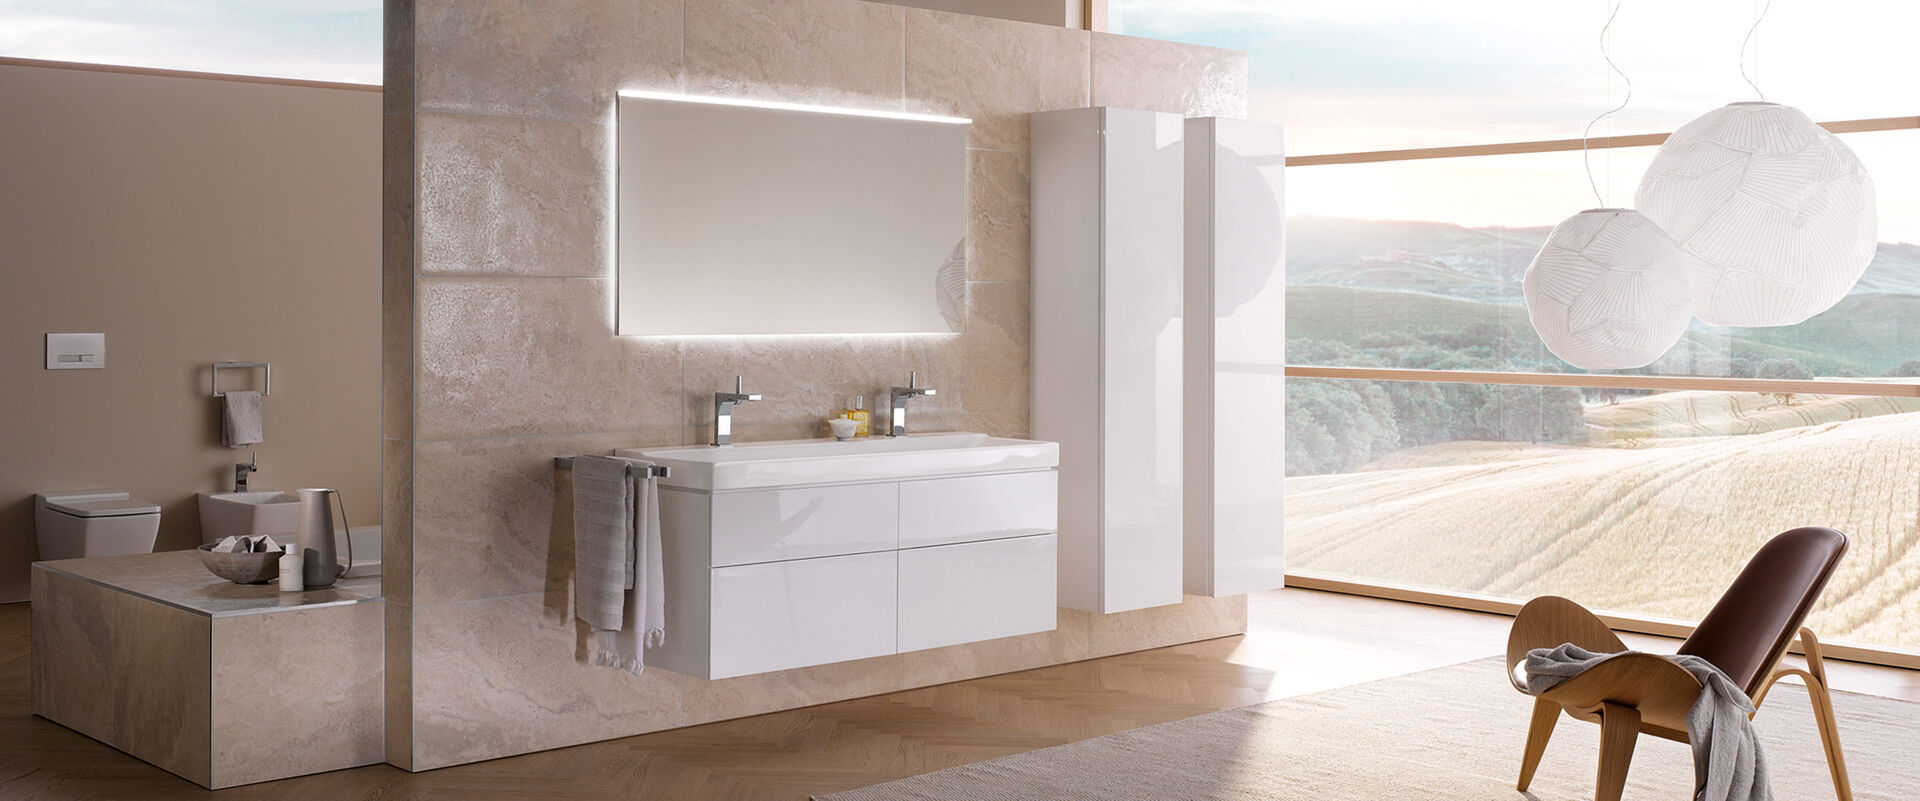 Großes Designer-Badezimmer lichtdurchflutet mit Blick auf ein Kornfeld: Geberit Xeno2 präsentiert Wannenbereich und im Vordergrund Doppelwaschtisch.